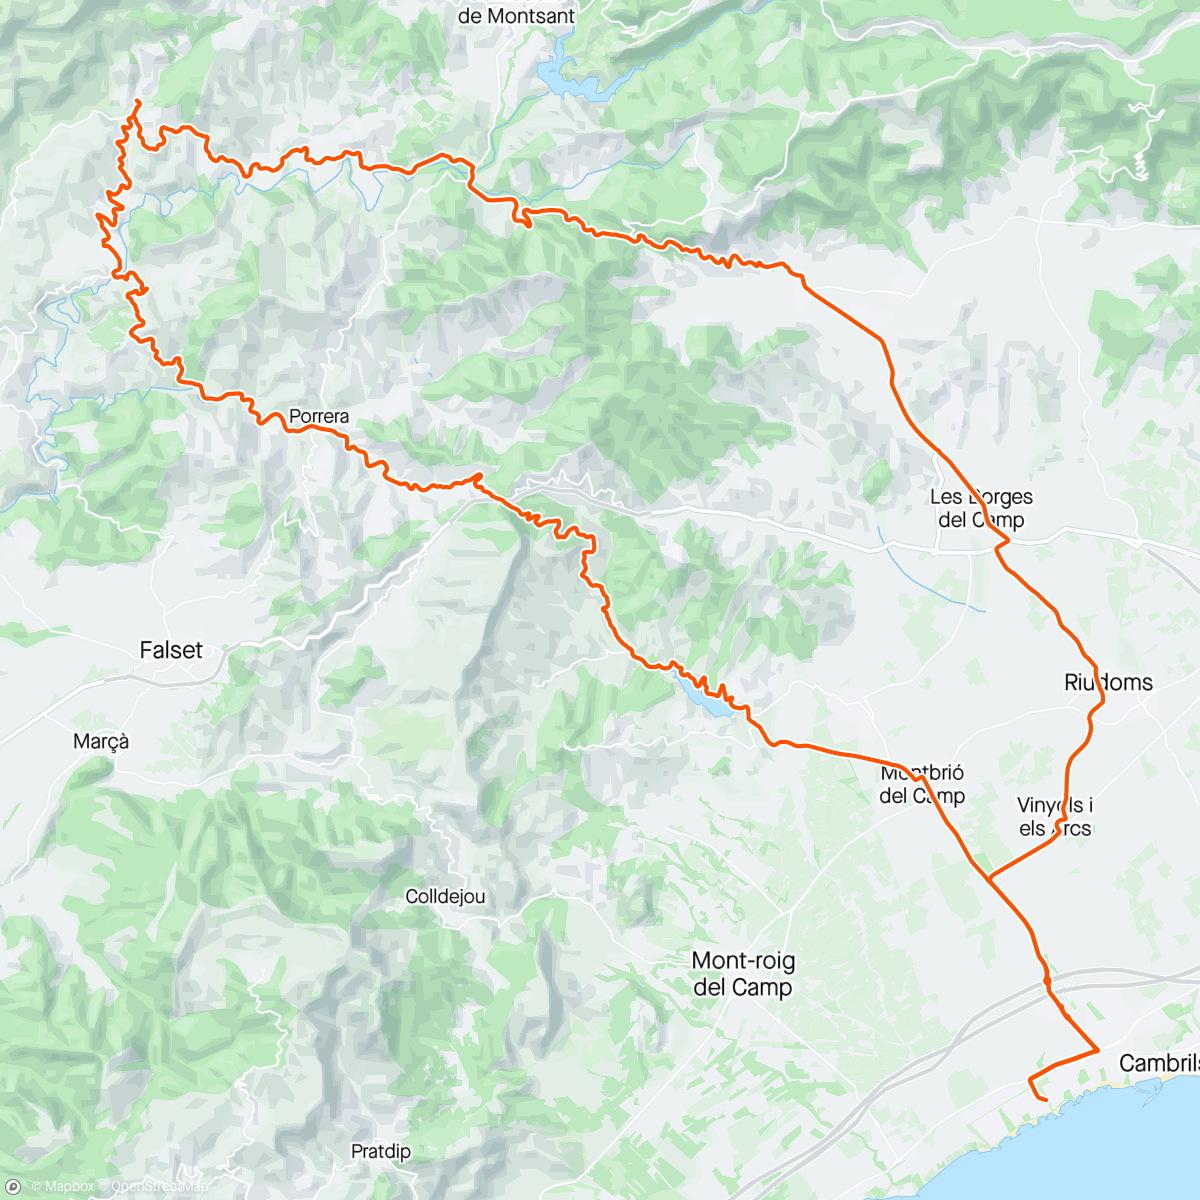 「Coll d'Alforja - Escaladei - Coll de la Teixeta」活動的地圖